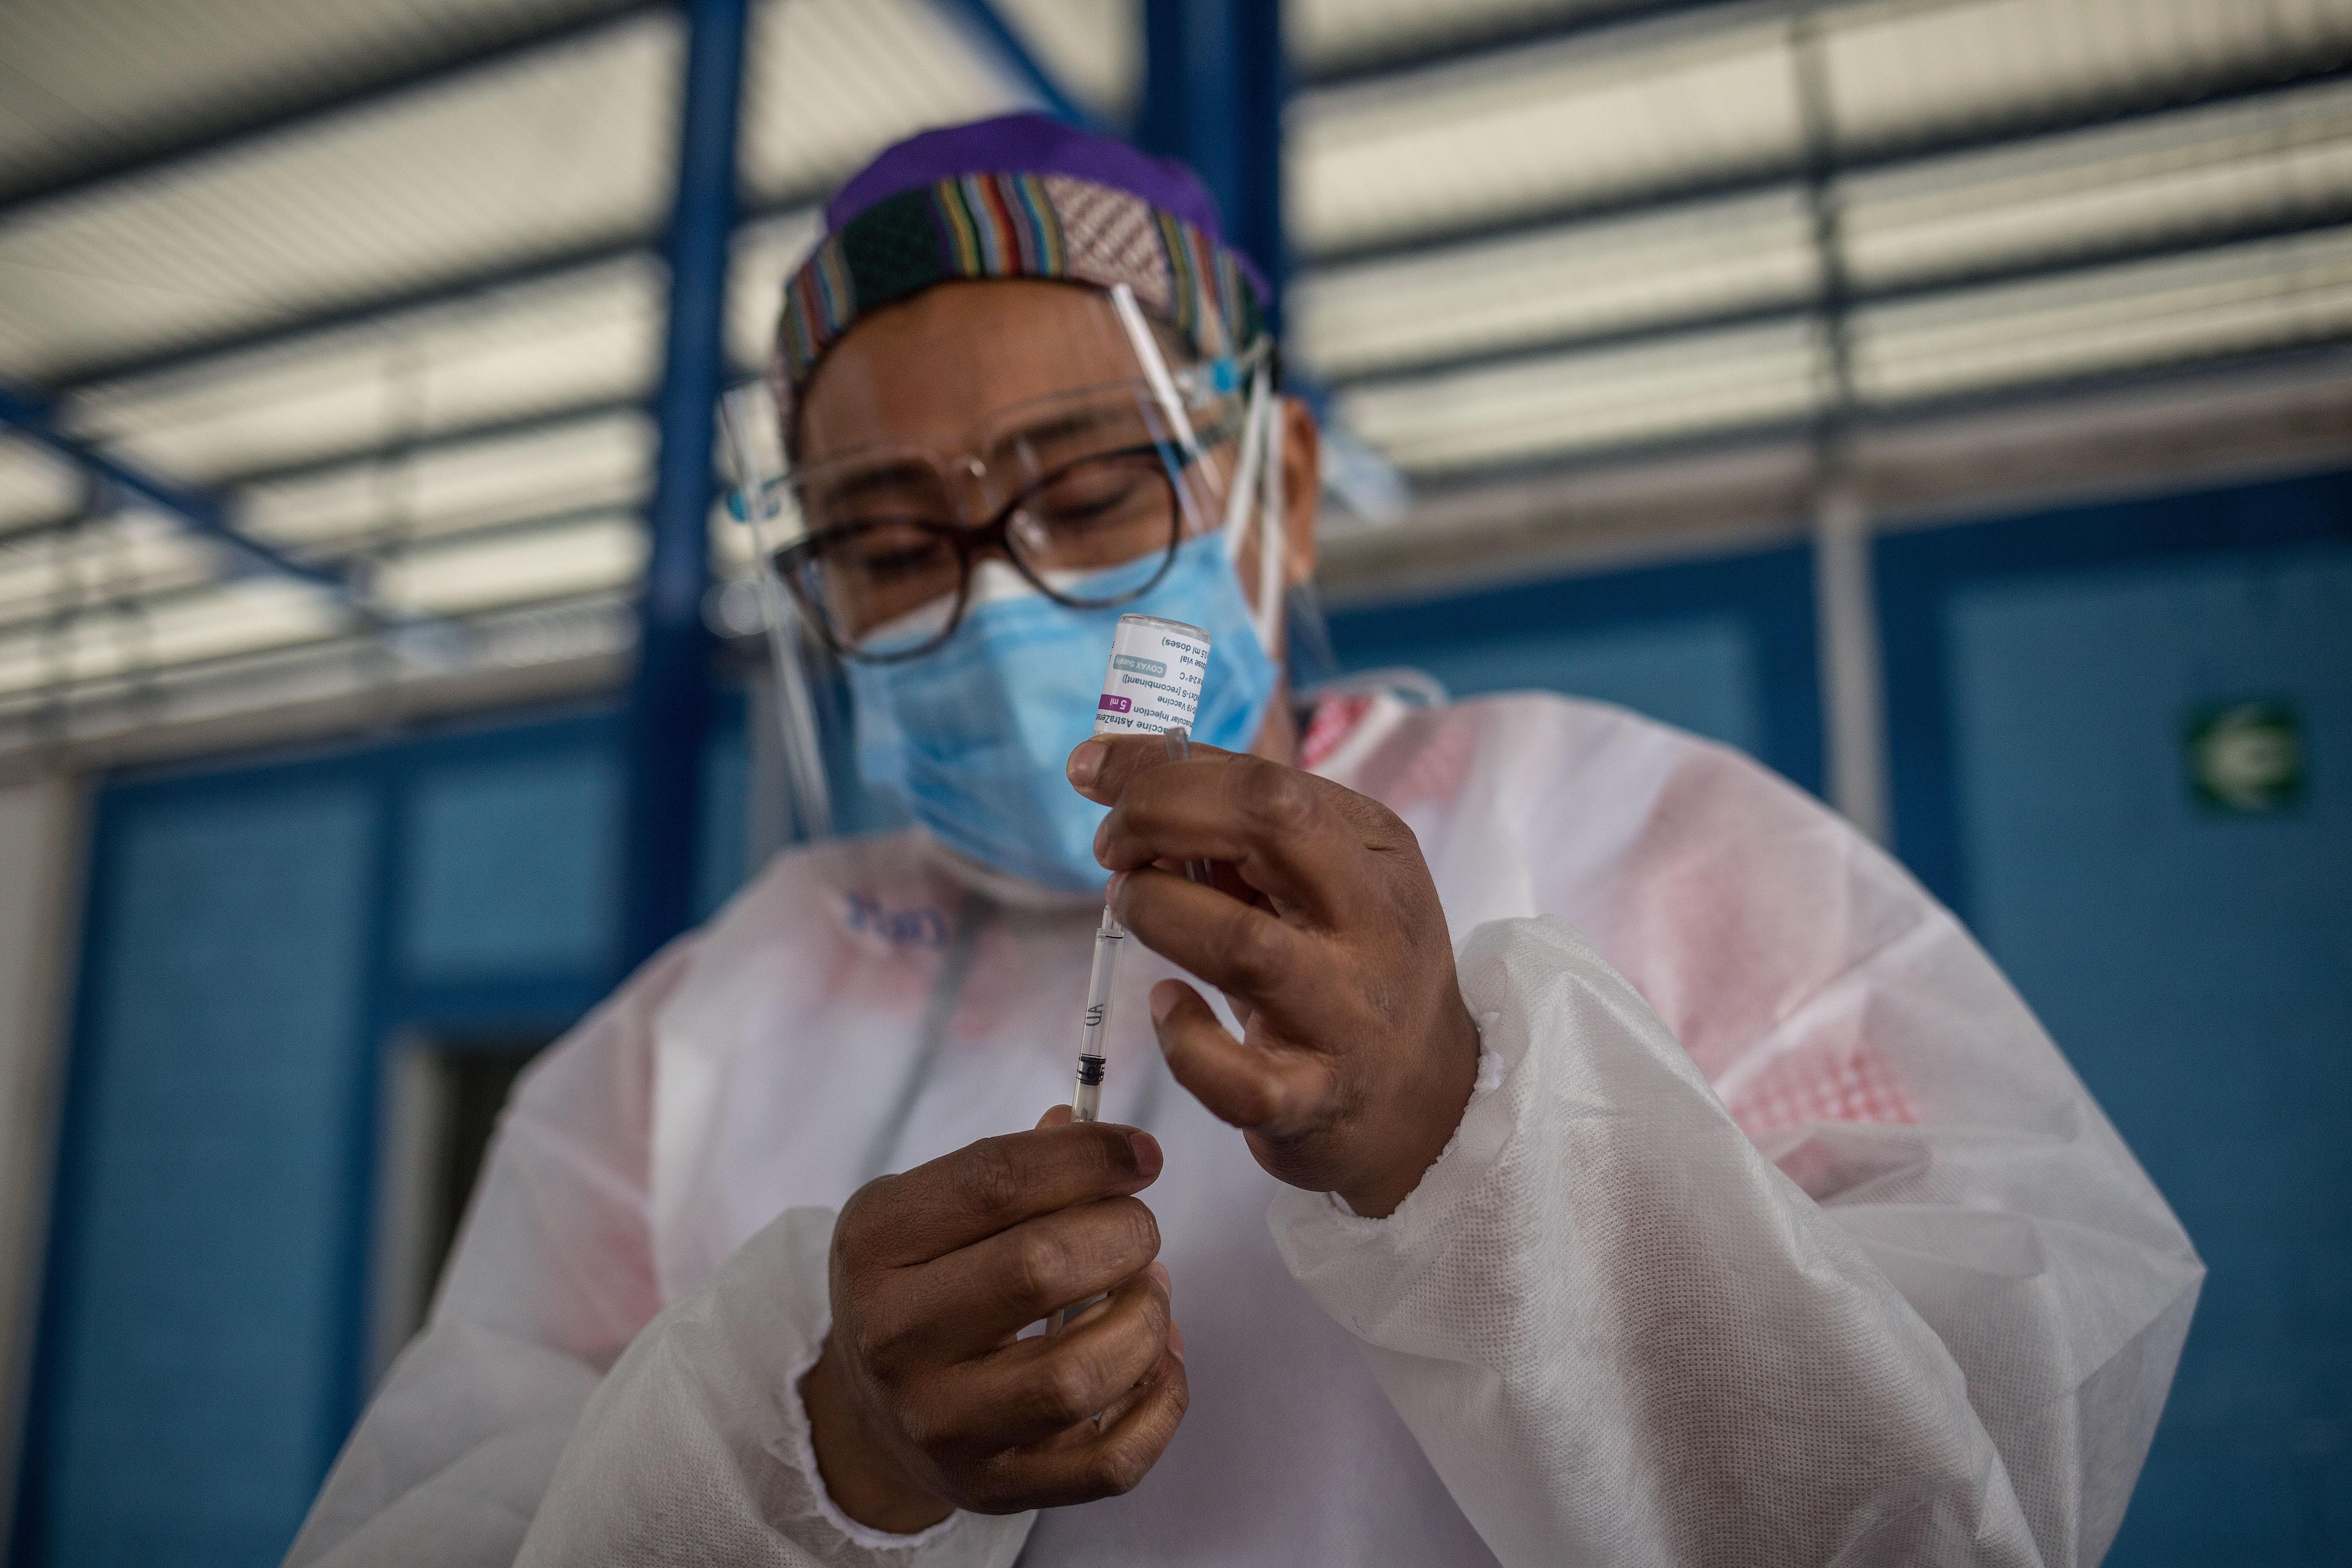 El proceso de vacunación avanza lento en Guatemala, aseguran expertos en temas de salud. (Foto Prensa Libre: EFE)